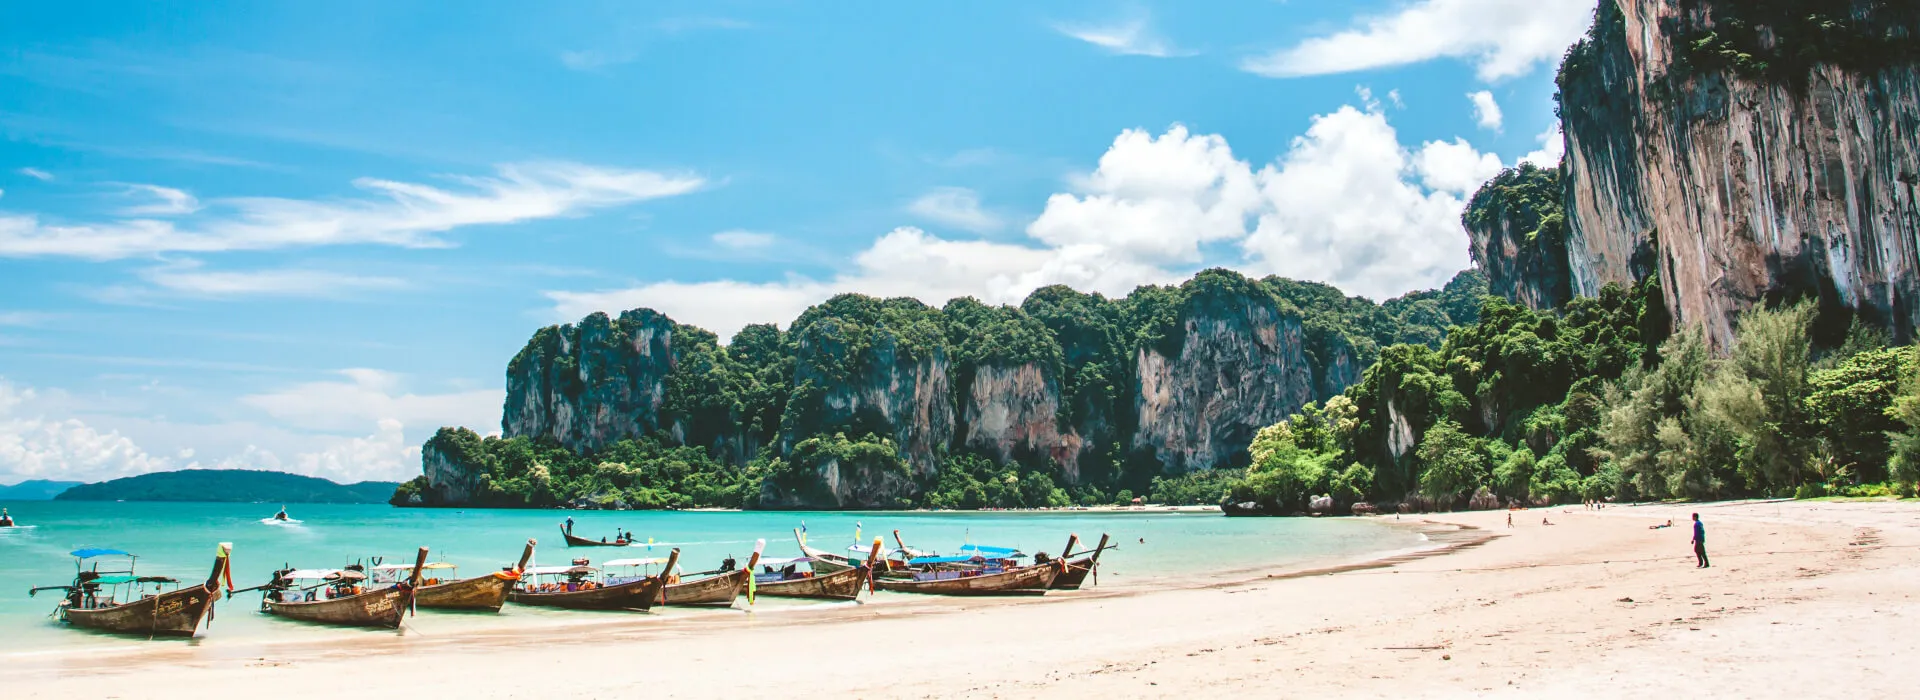 Fernreisen nach Thailand background image